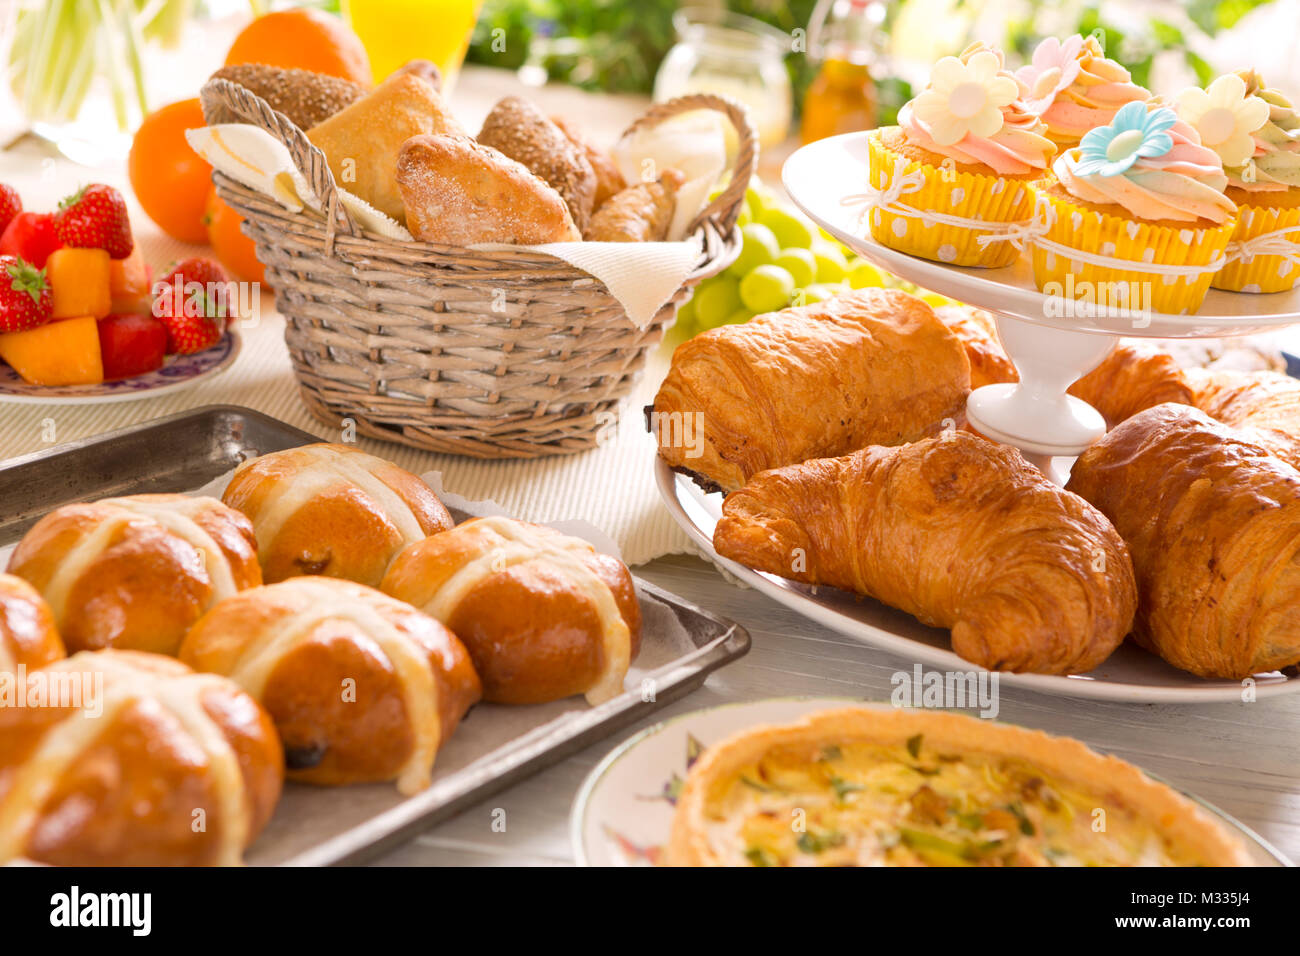 Desayuno o almuerzo mesa llena de todo tipo de delicatessen delicioso preparado para una comida de Pascua. Foto de stock